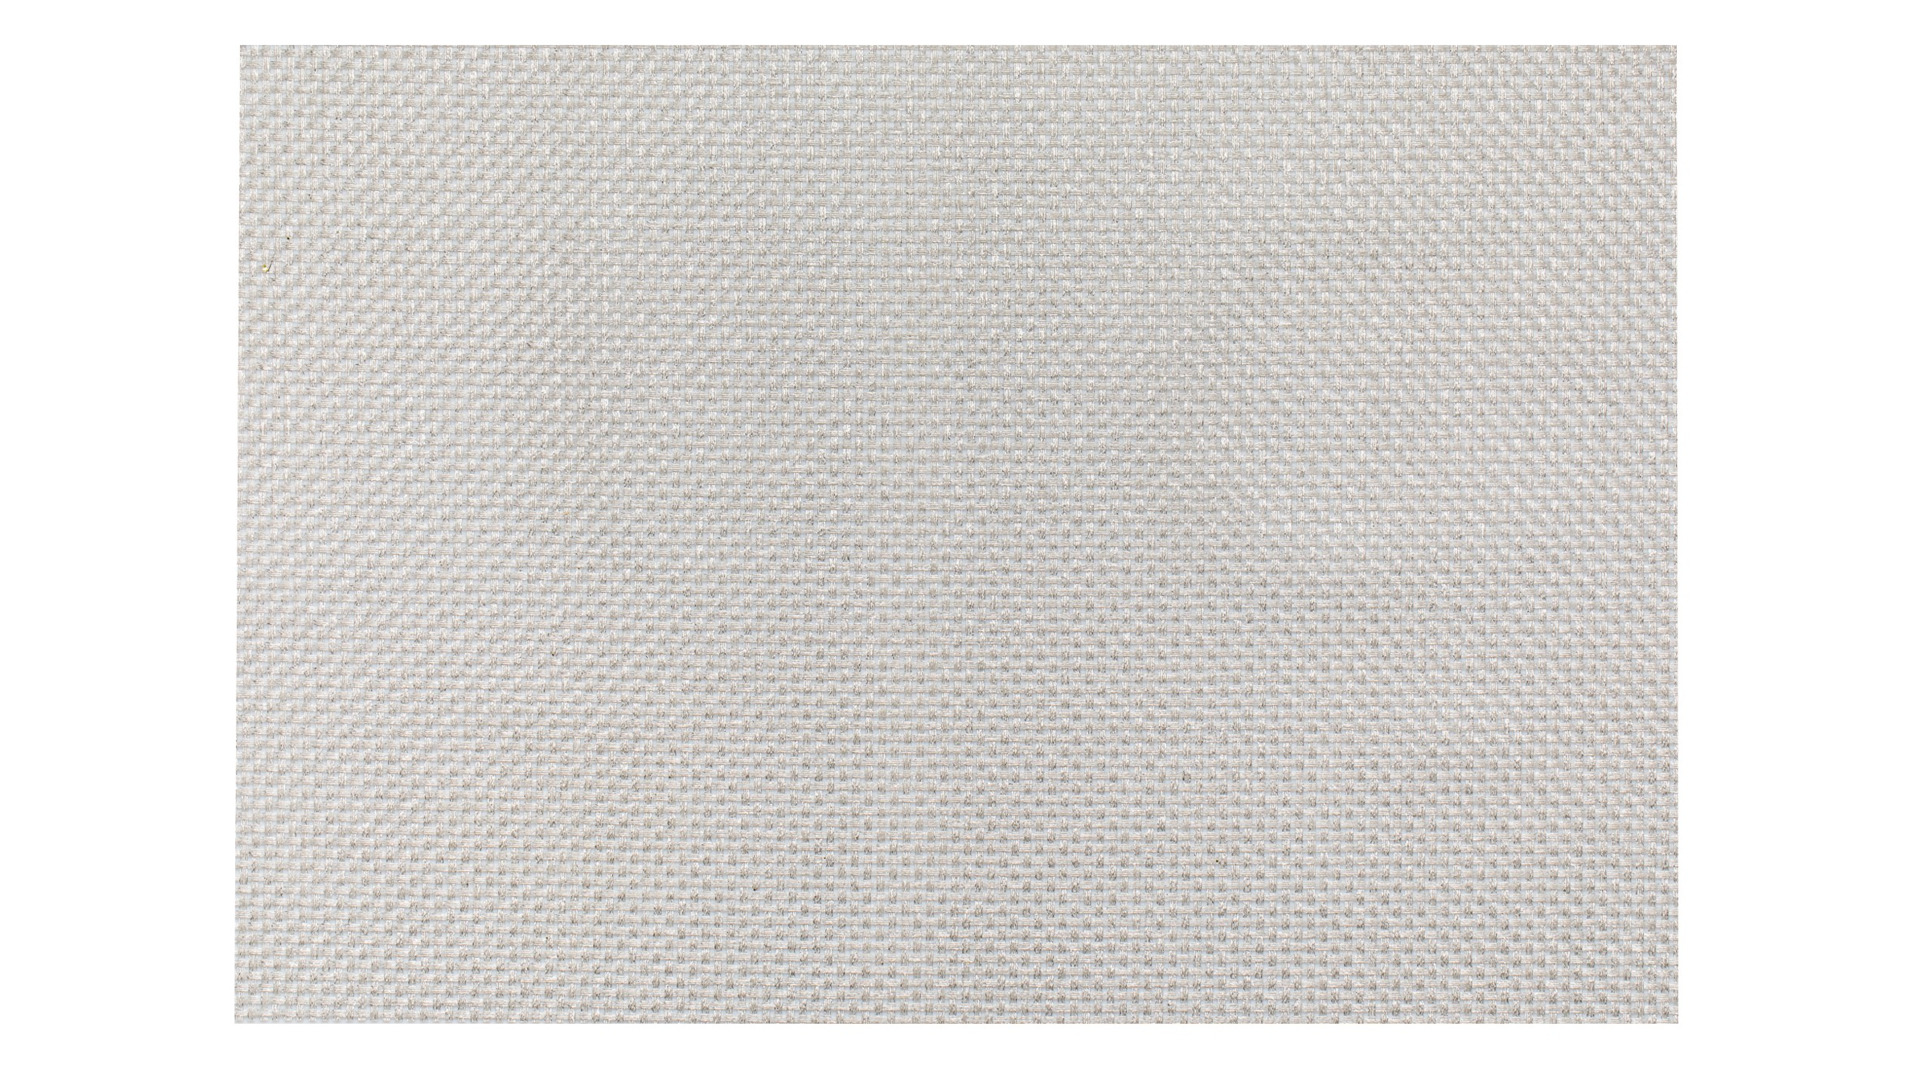 Салфетка подстановочная Harman плетеная Harman Софт Тач 48х33 см, серебристая